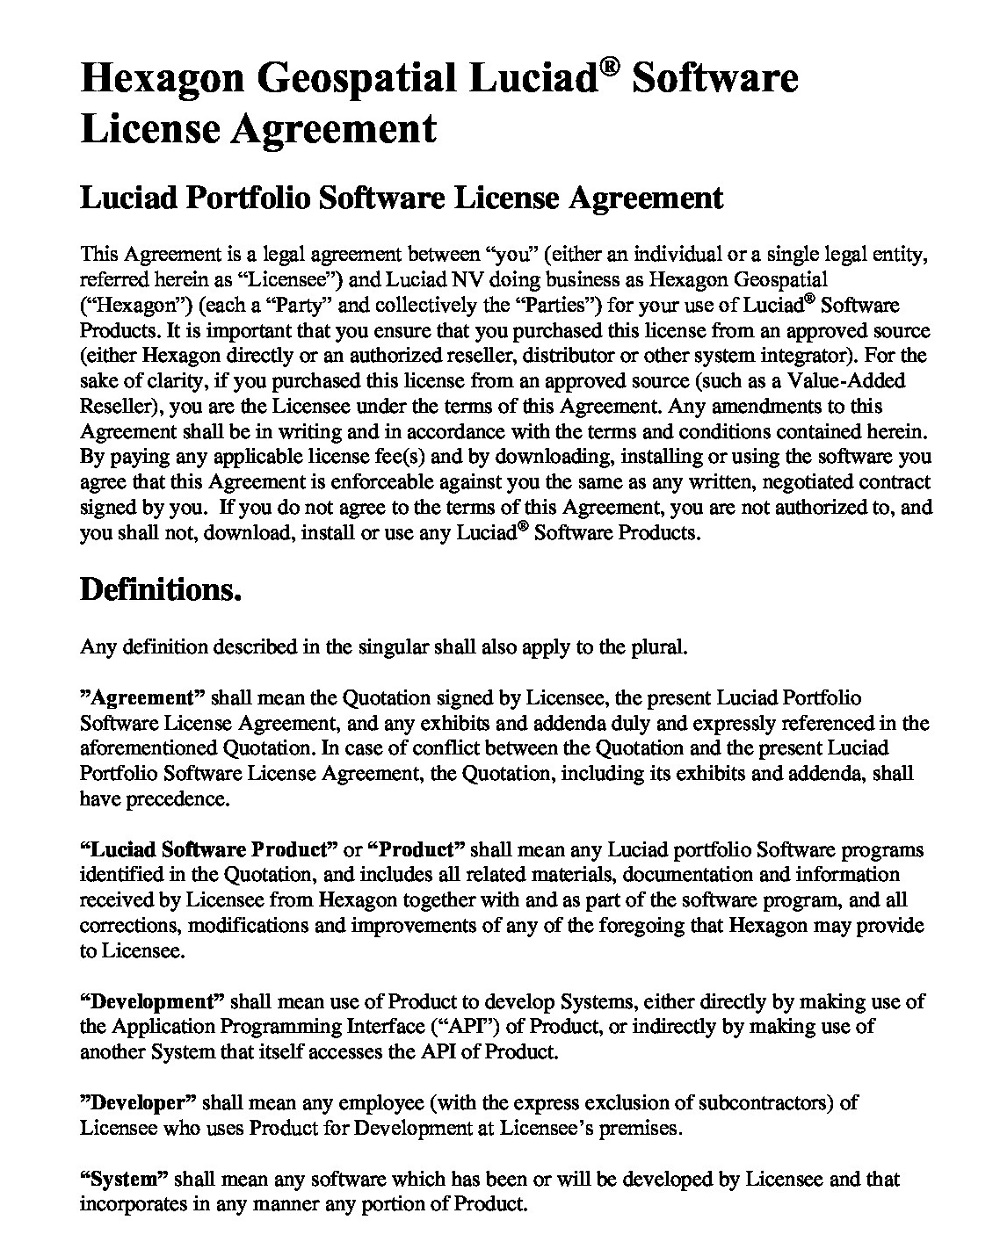 Portfolio Software License Agreement